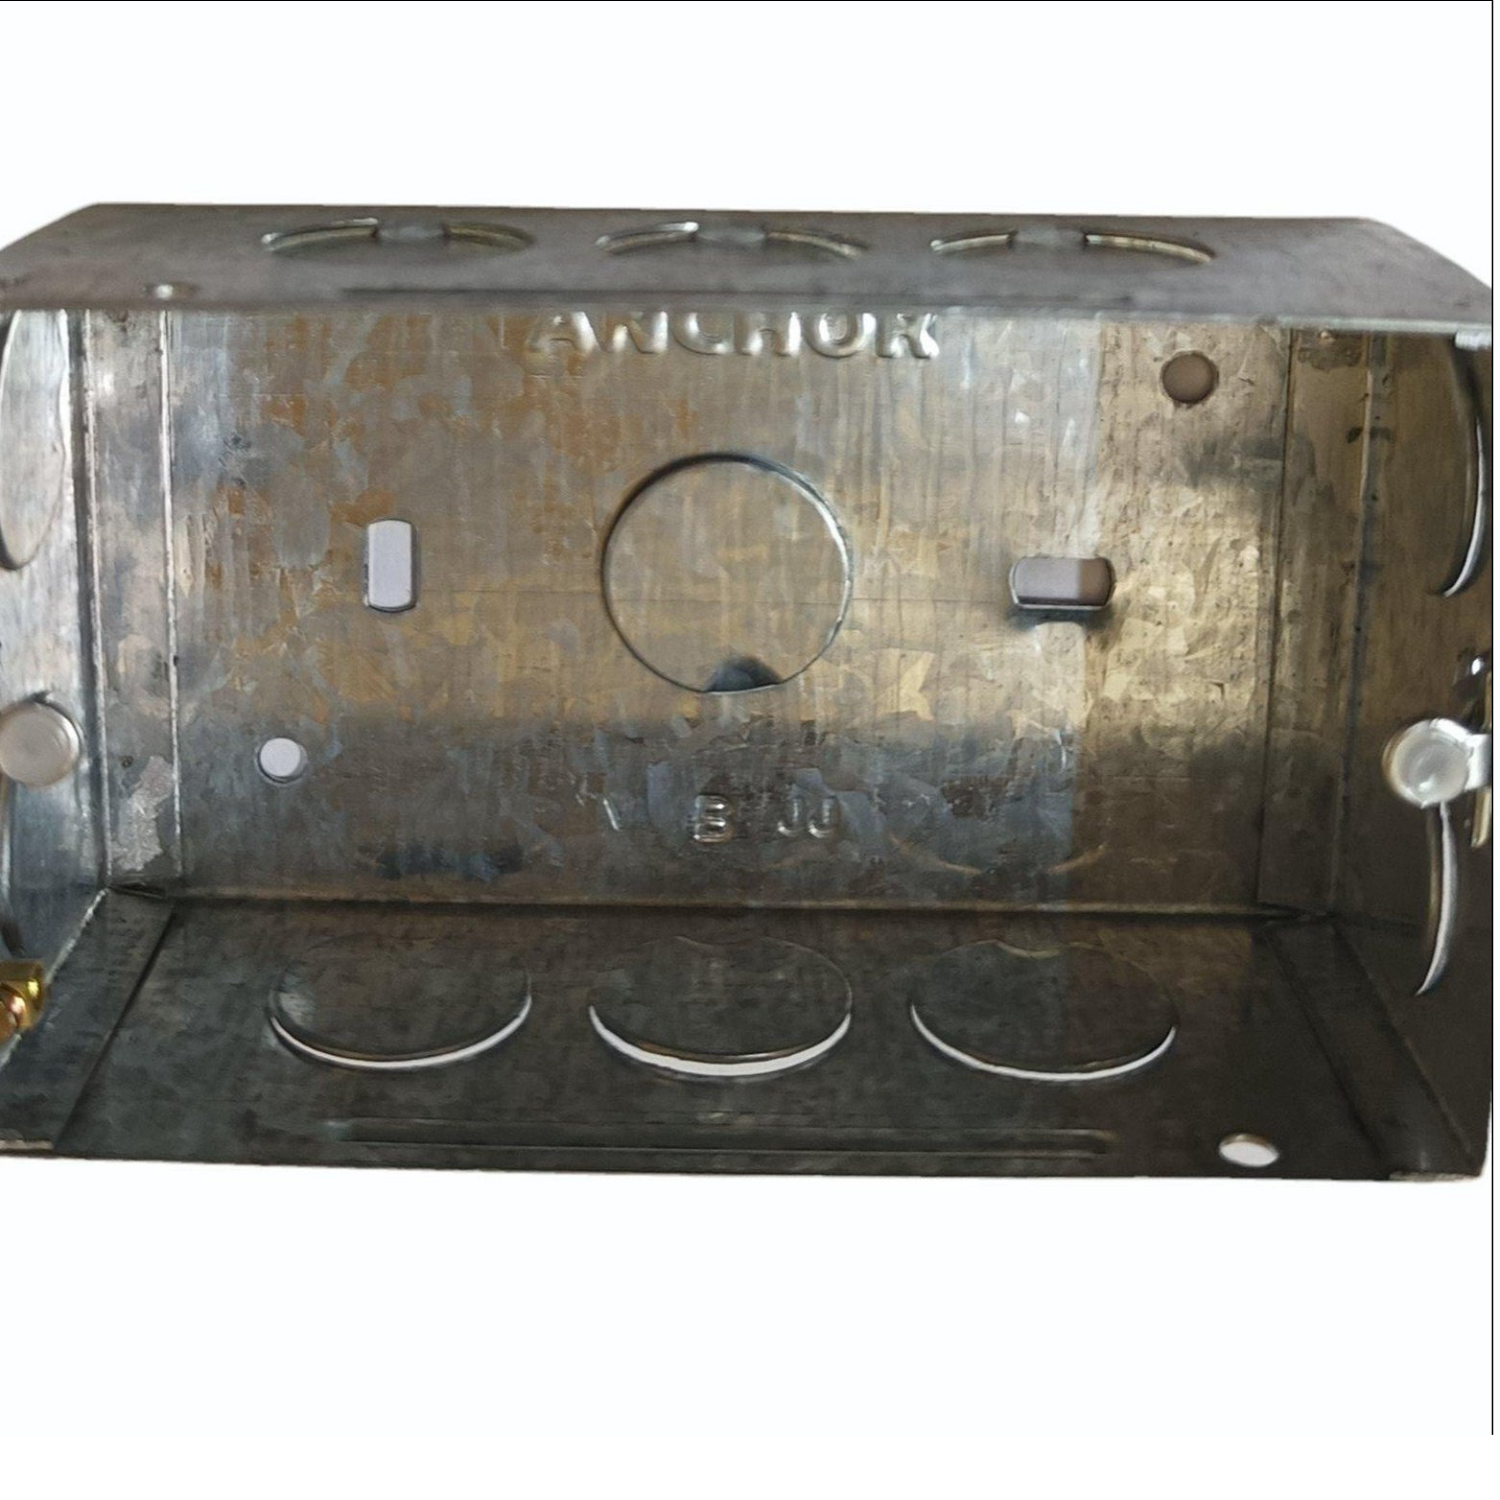 Anchor 4 Modular Conceled Metal Box (Light)